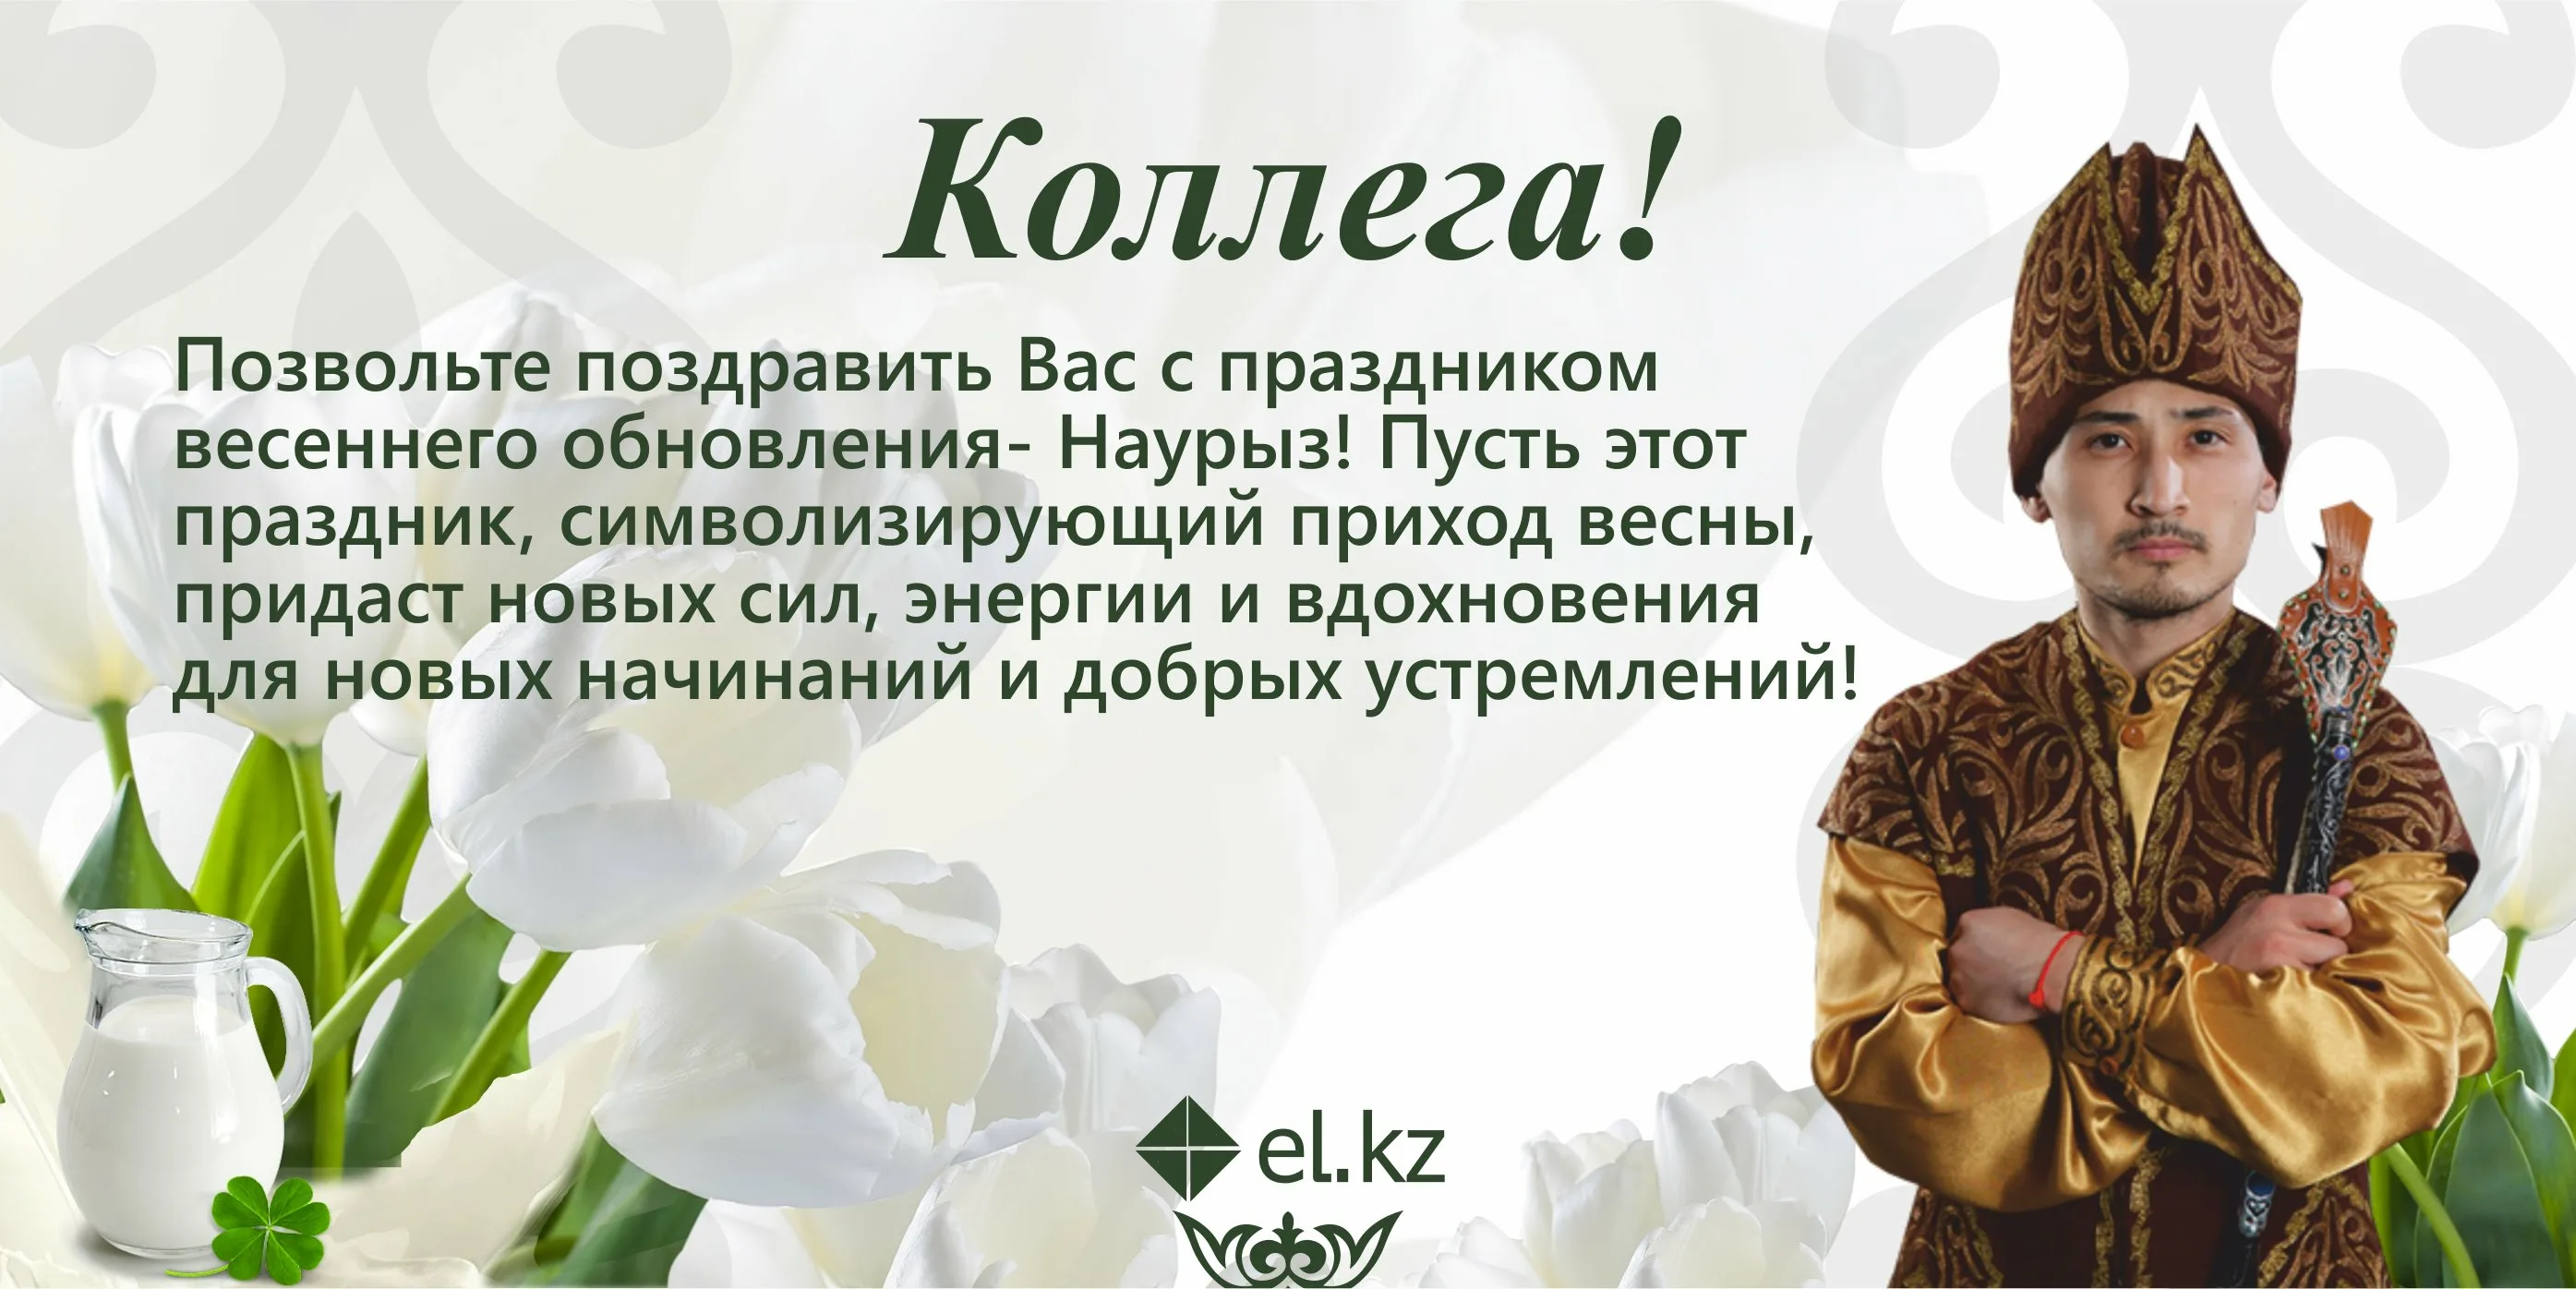 Наурыз поздравление. Поздравление на казахском. Поздравление с Наурызом на казахском. Наурыз открытки с поздравлениями на казахском языке.